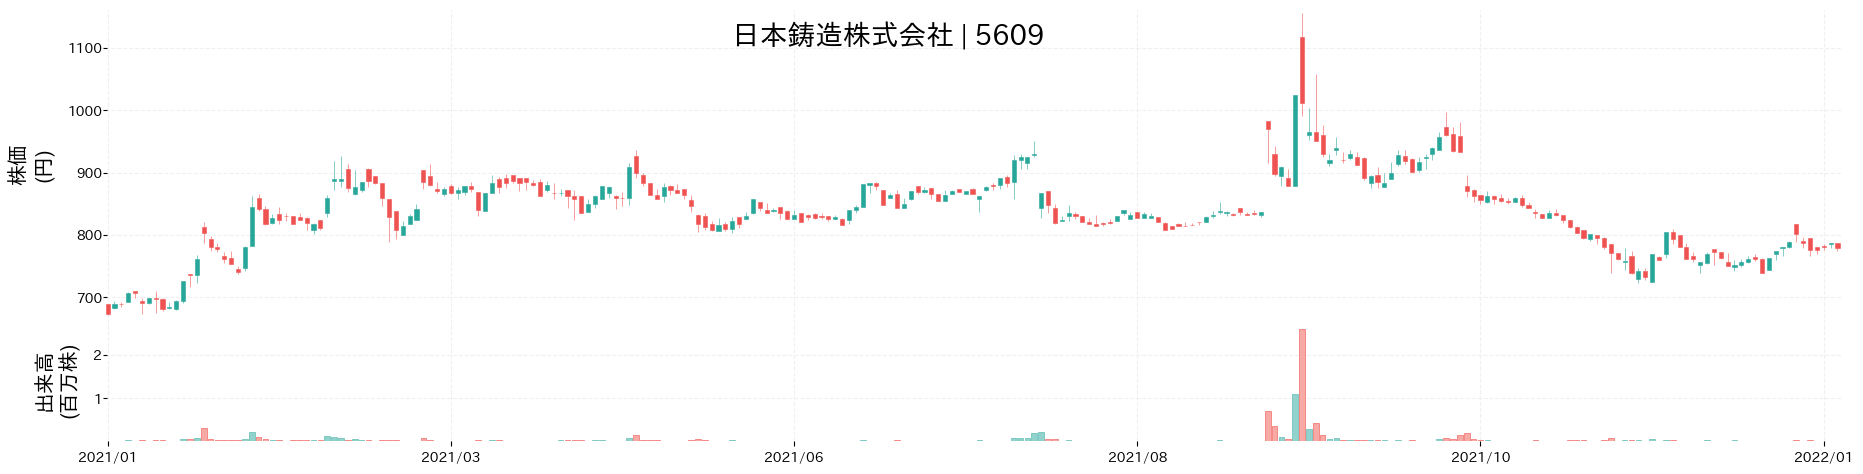 日本鋳造の株価推移(2021)